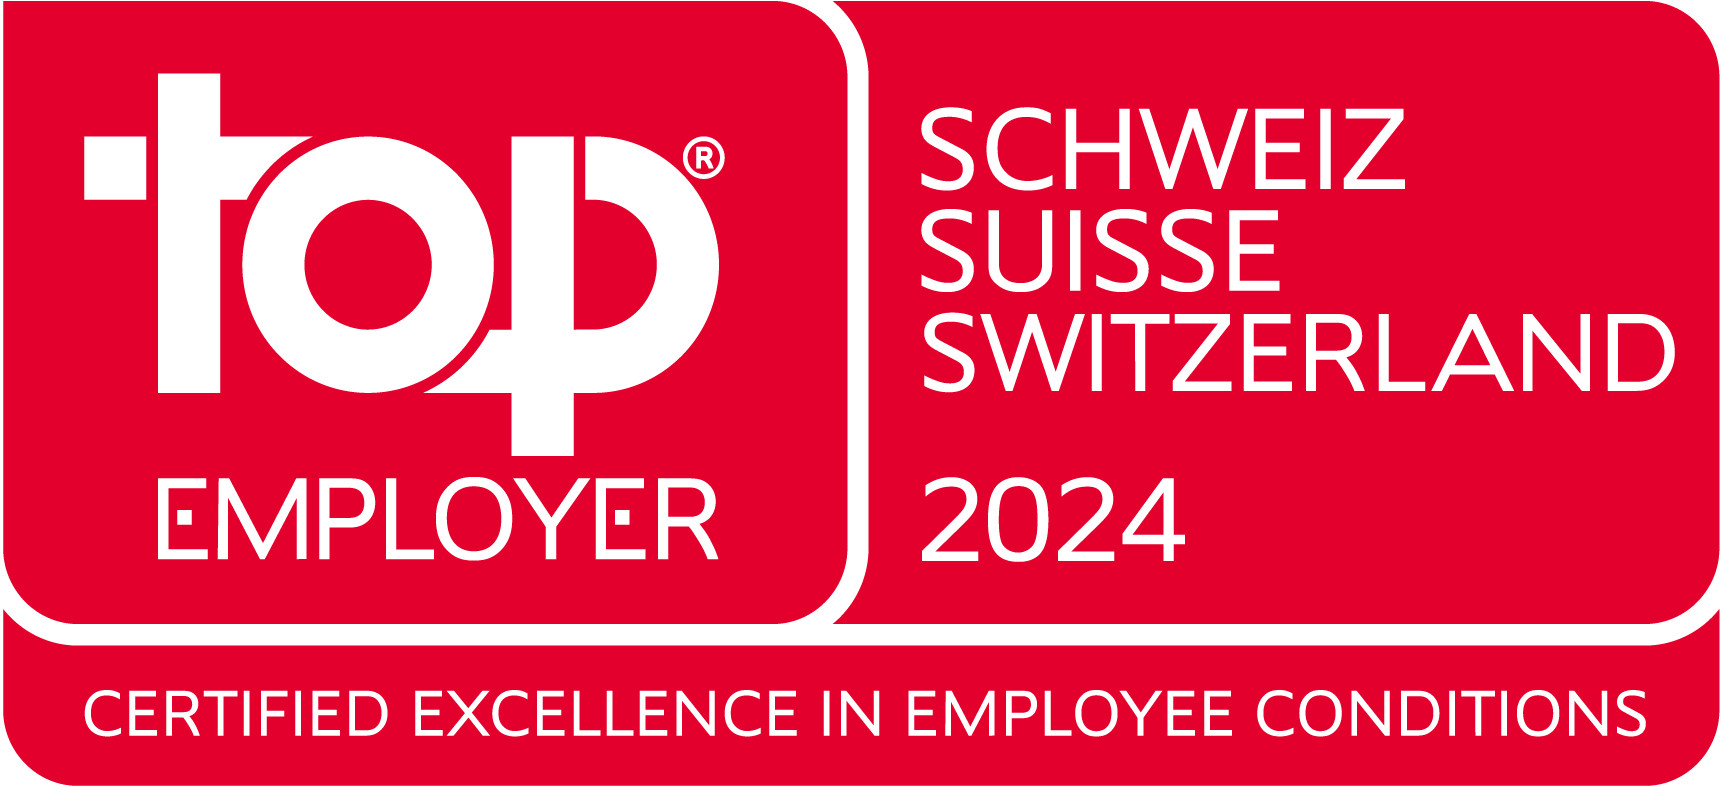 top_employer_switzerland_2024